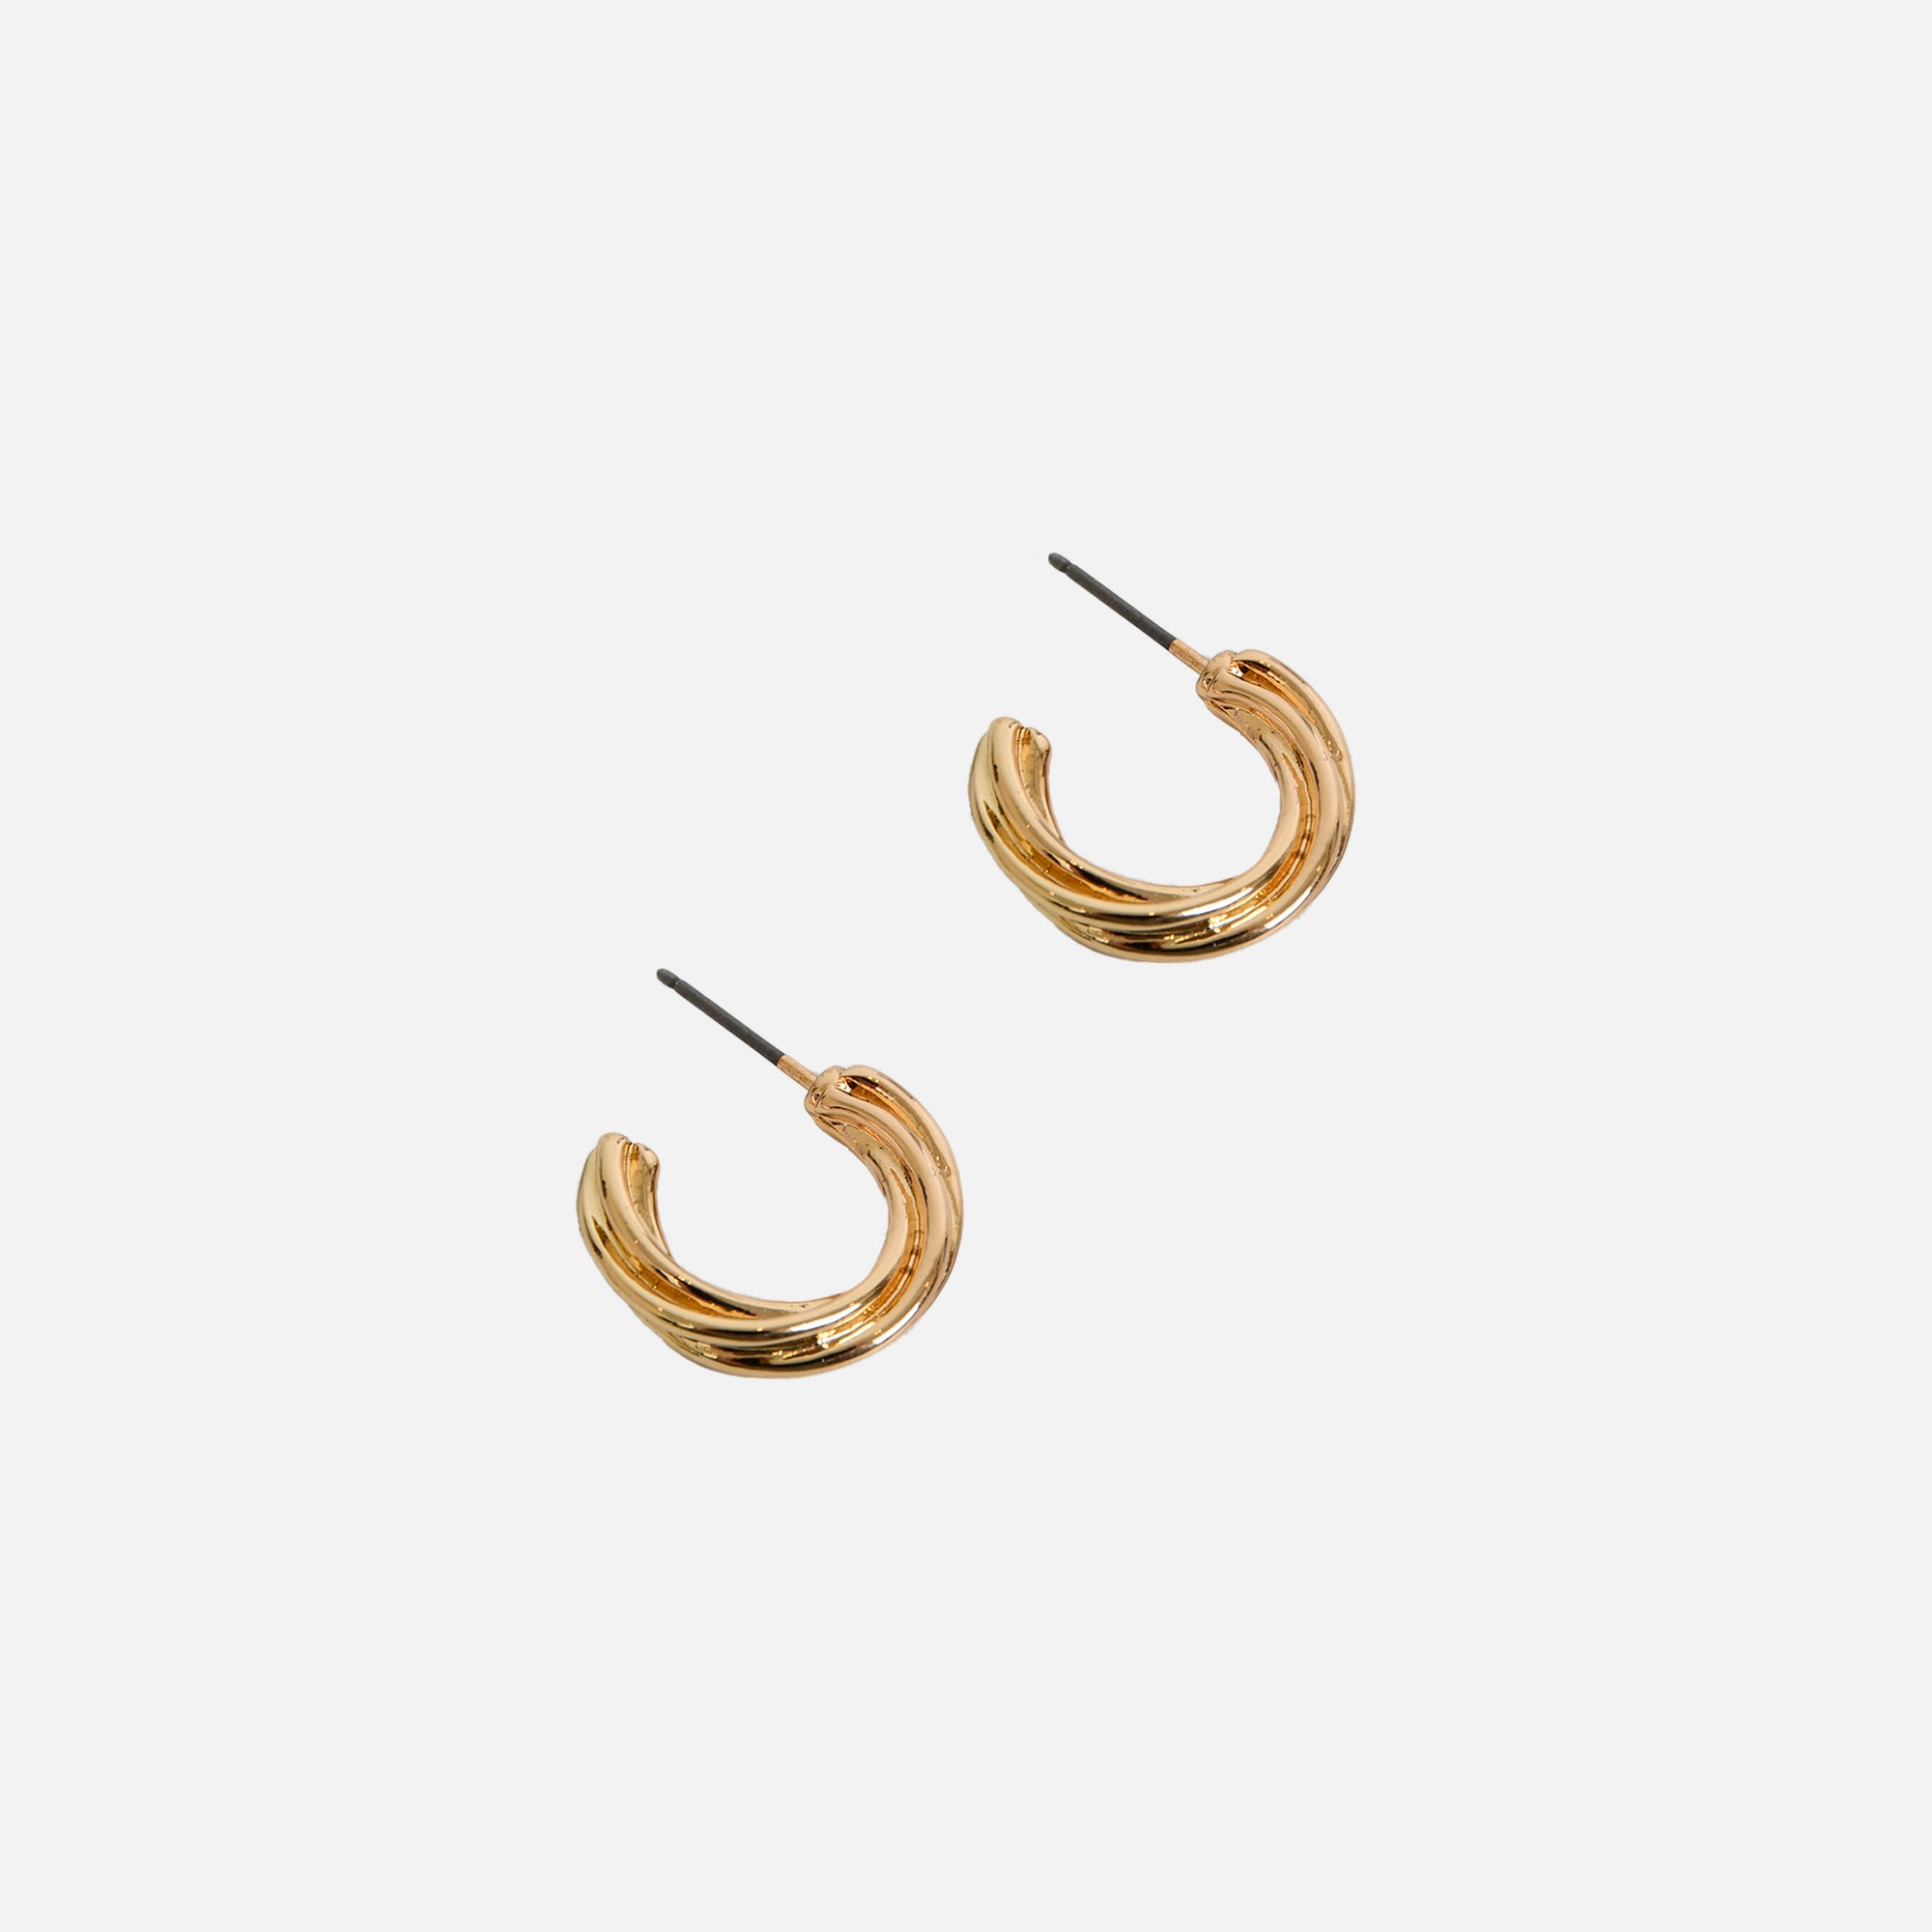 Trio de boucles d’oreilles dorées fixes et anneaux